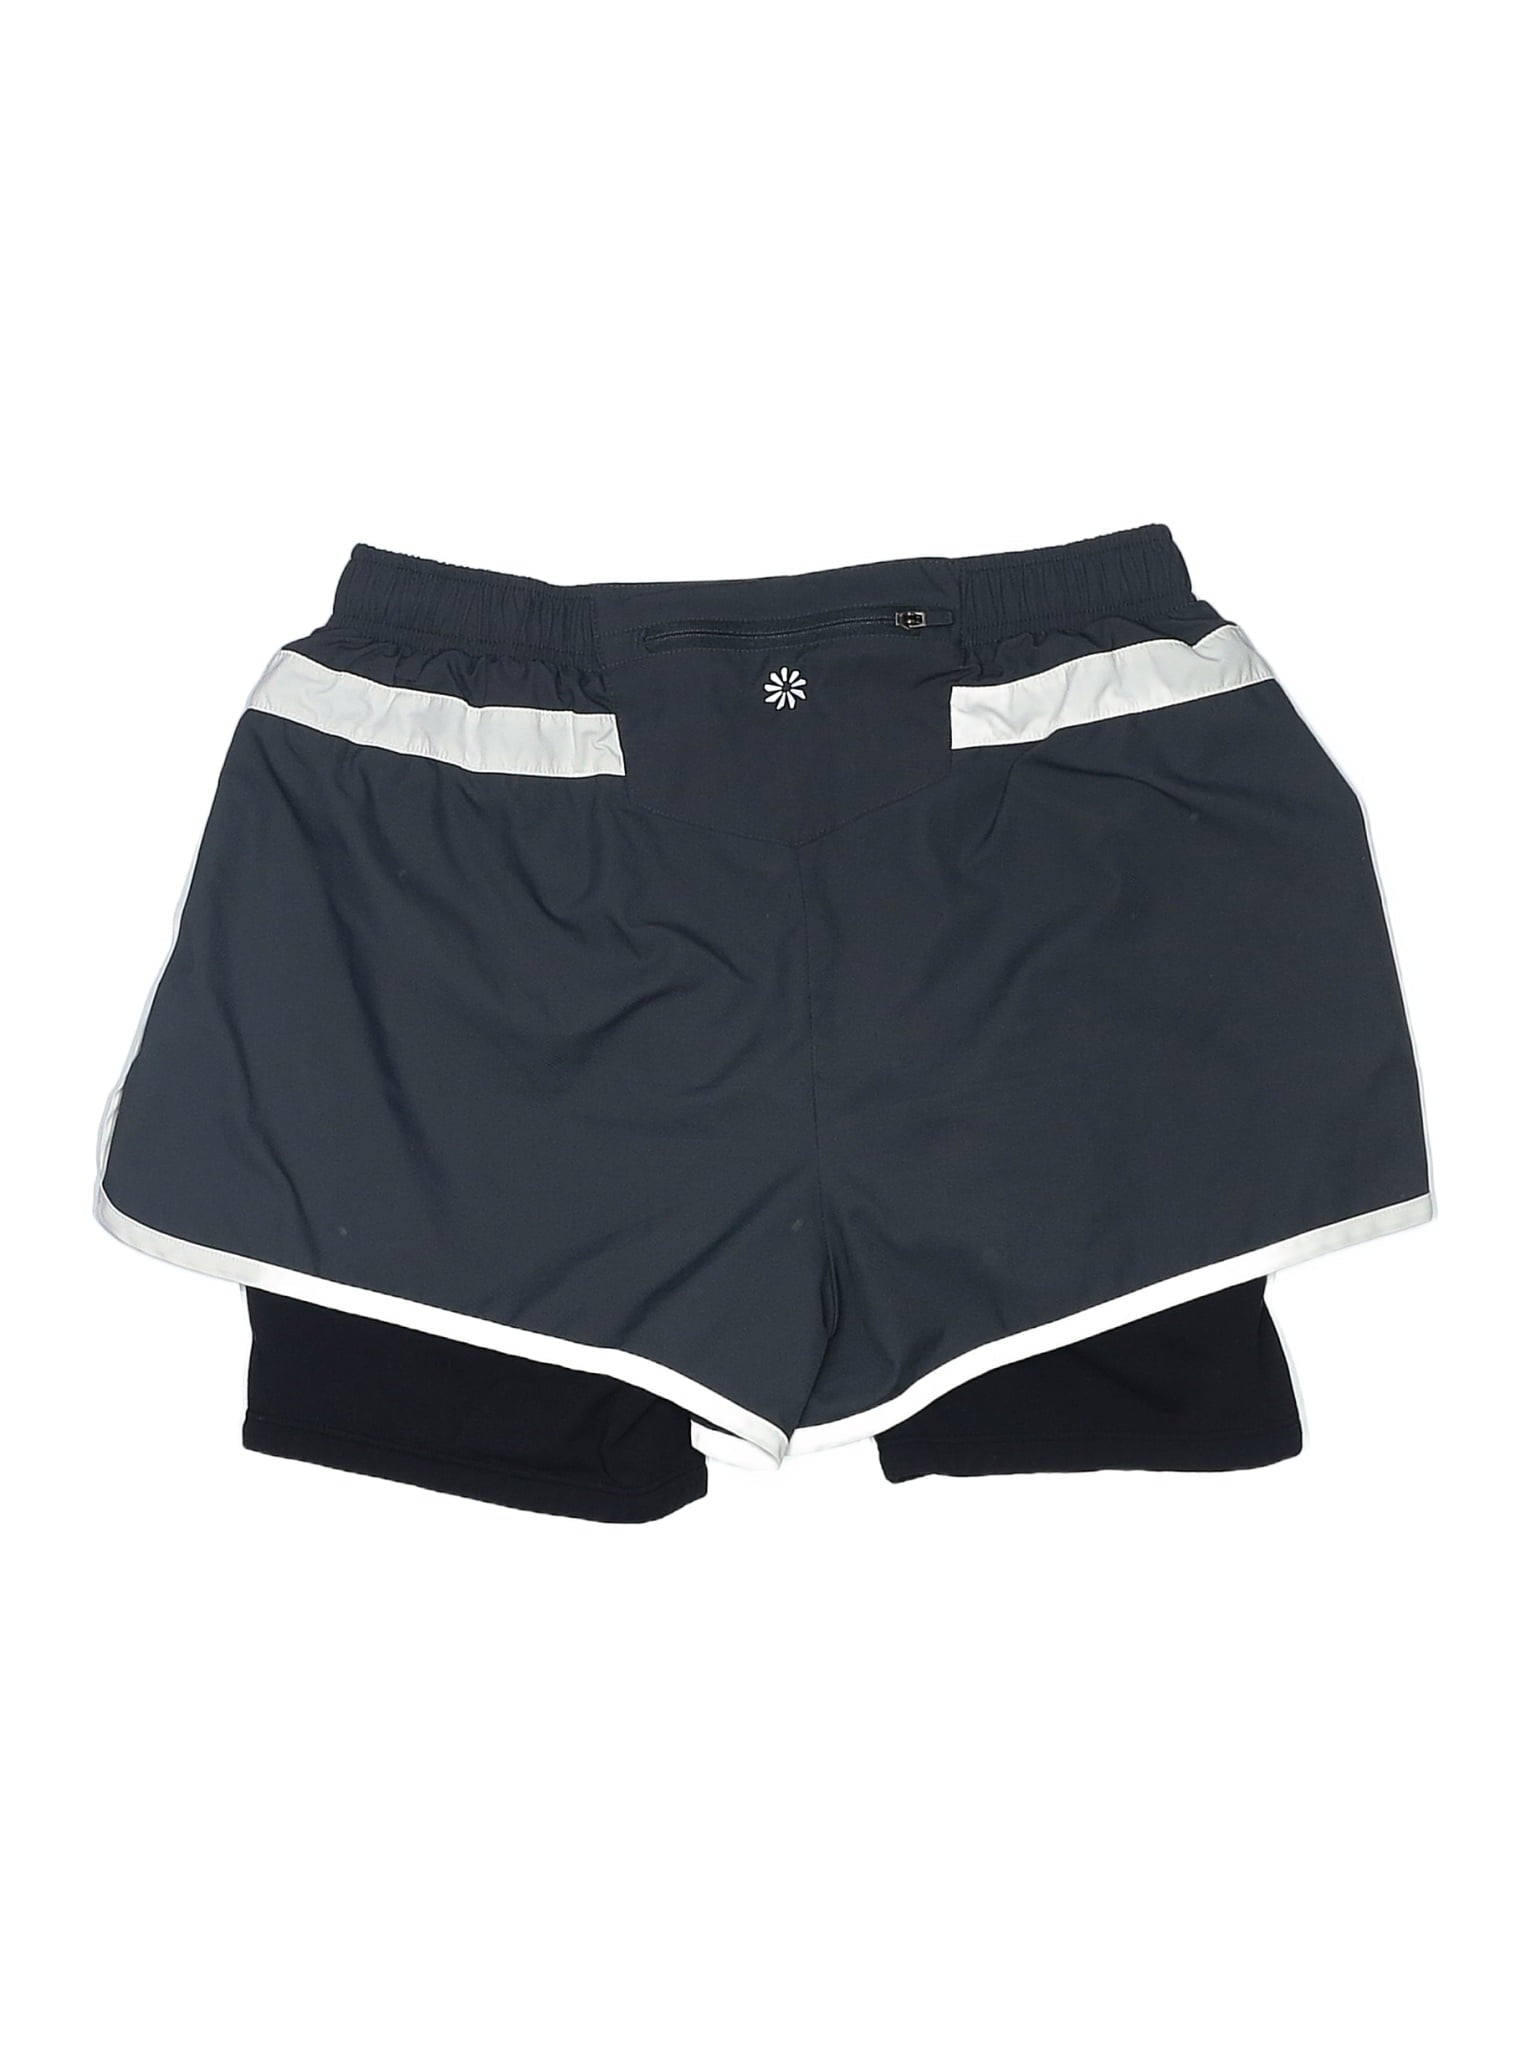 Athletic Shorts size - S